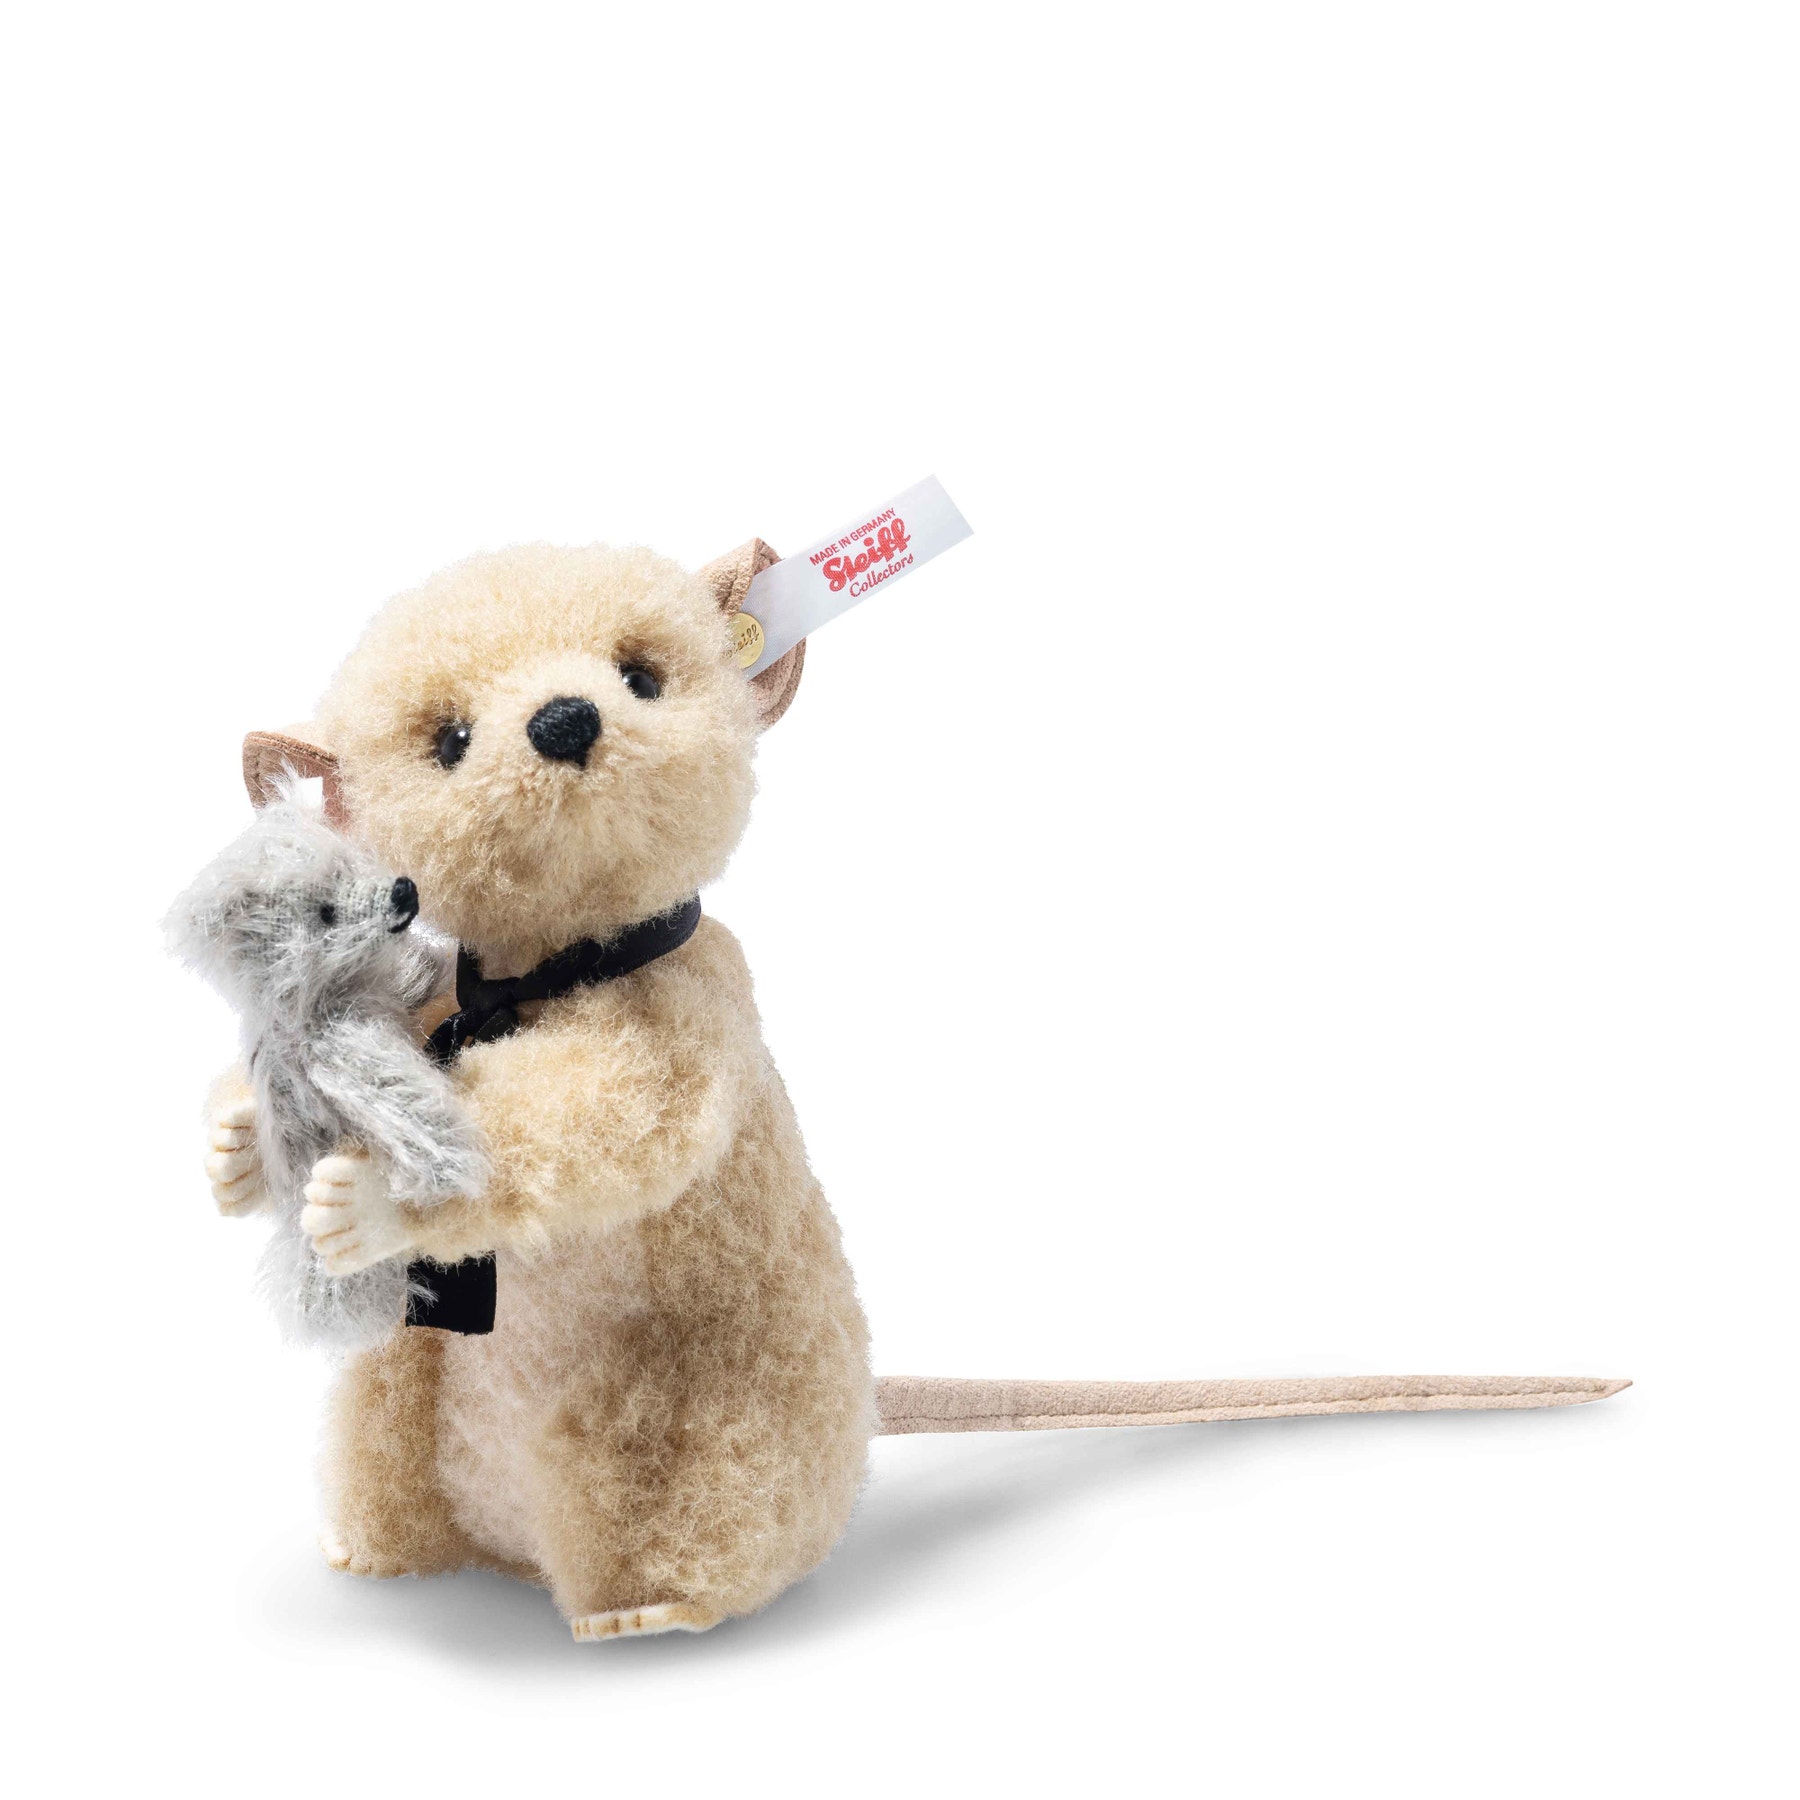 Richard mouse with Teddy bear